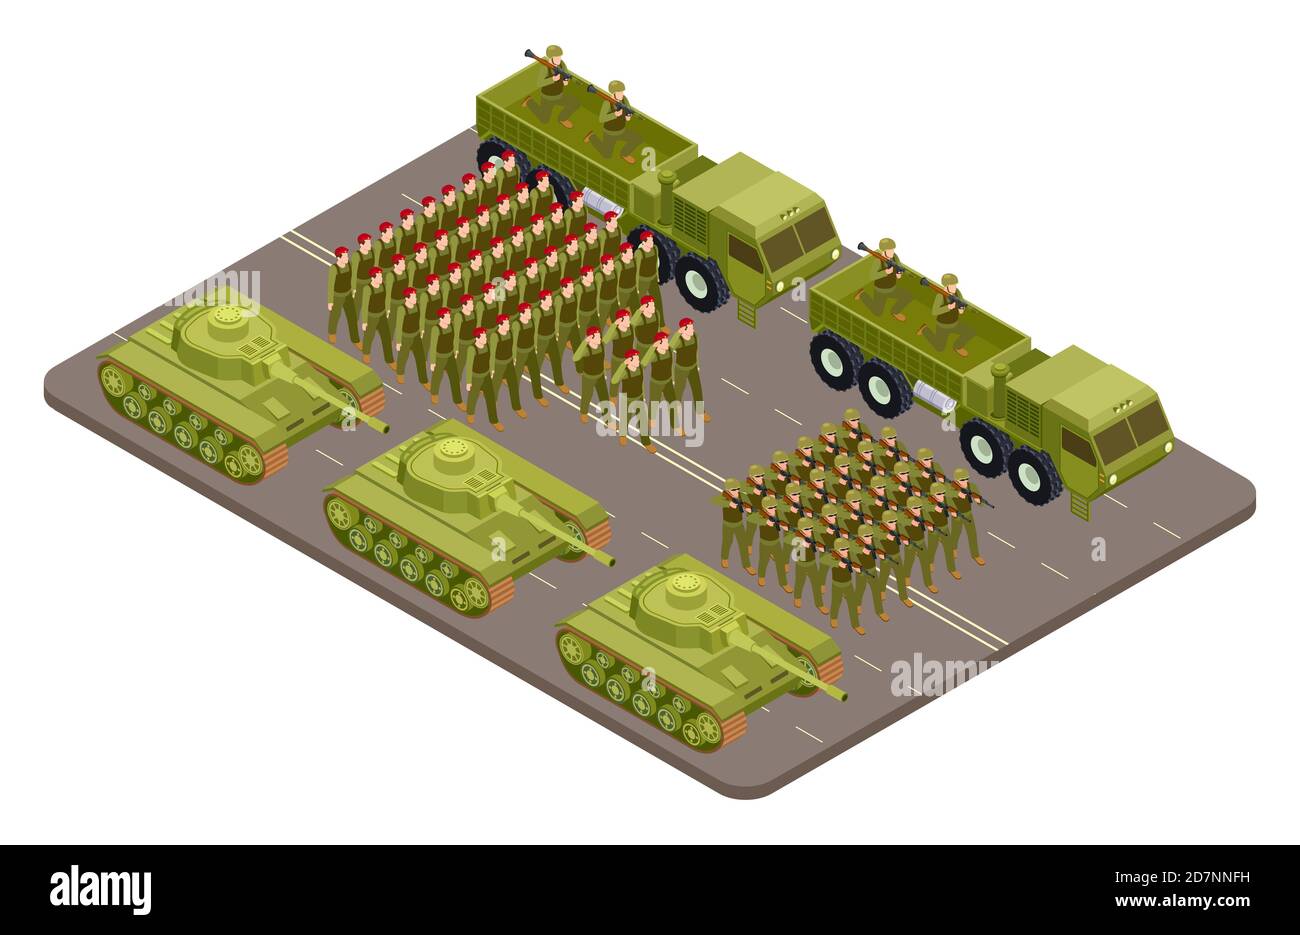 Militärische Parade Vektor isometrisch mit Soldaten und militärische Ausrüstung. Militär Parade Armee, Soldat Uniform Illustration Stock Vektor